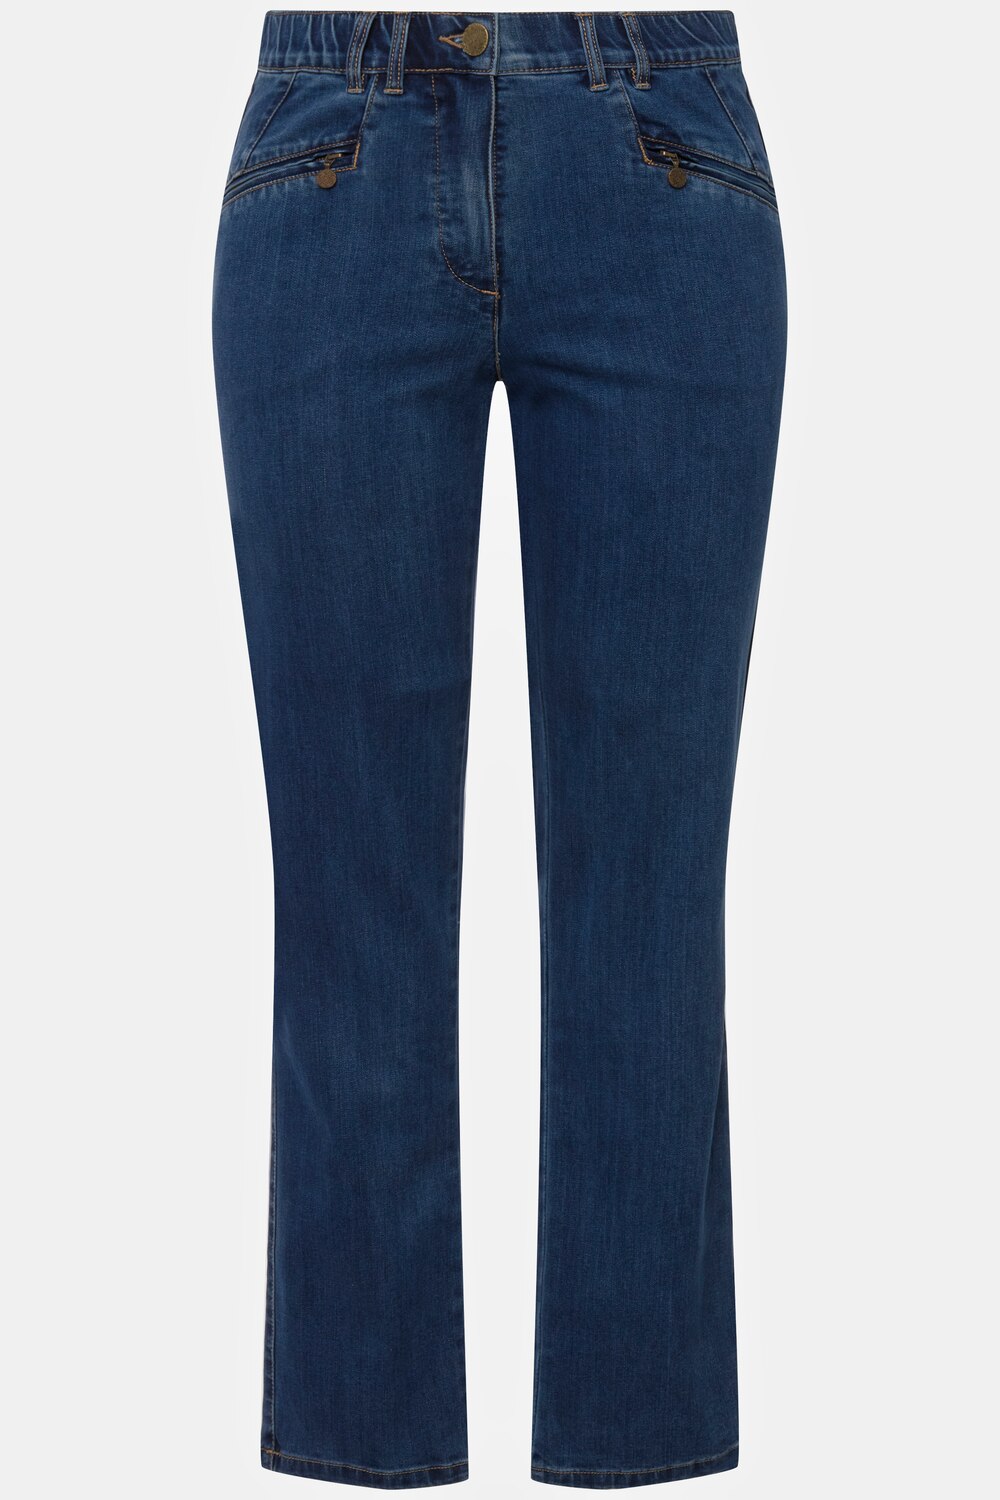 Grote Maten jeans Mony, Dames, blauw, Maat: 29, Katoen/Polyester/Viscose, Ulla Popken